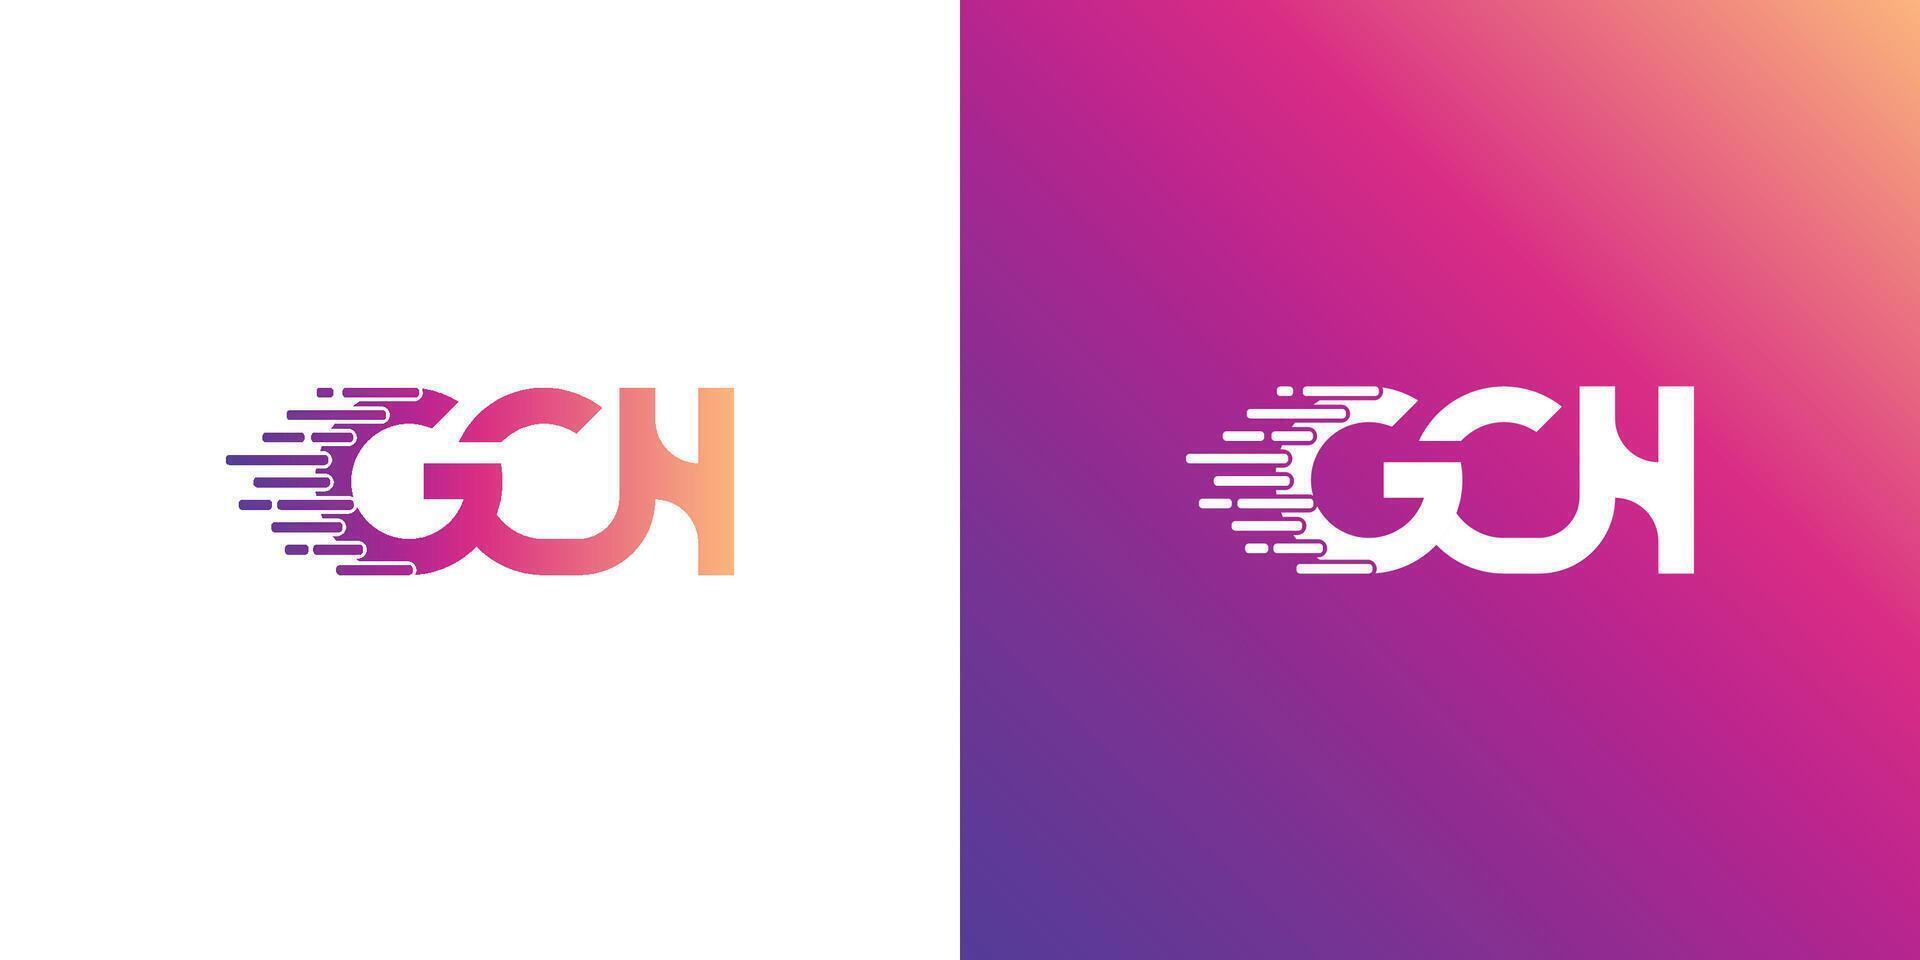 gch letra creativo moderno logo diseño. gch letra inicial logo diseño modelo vector ilustración.